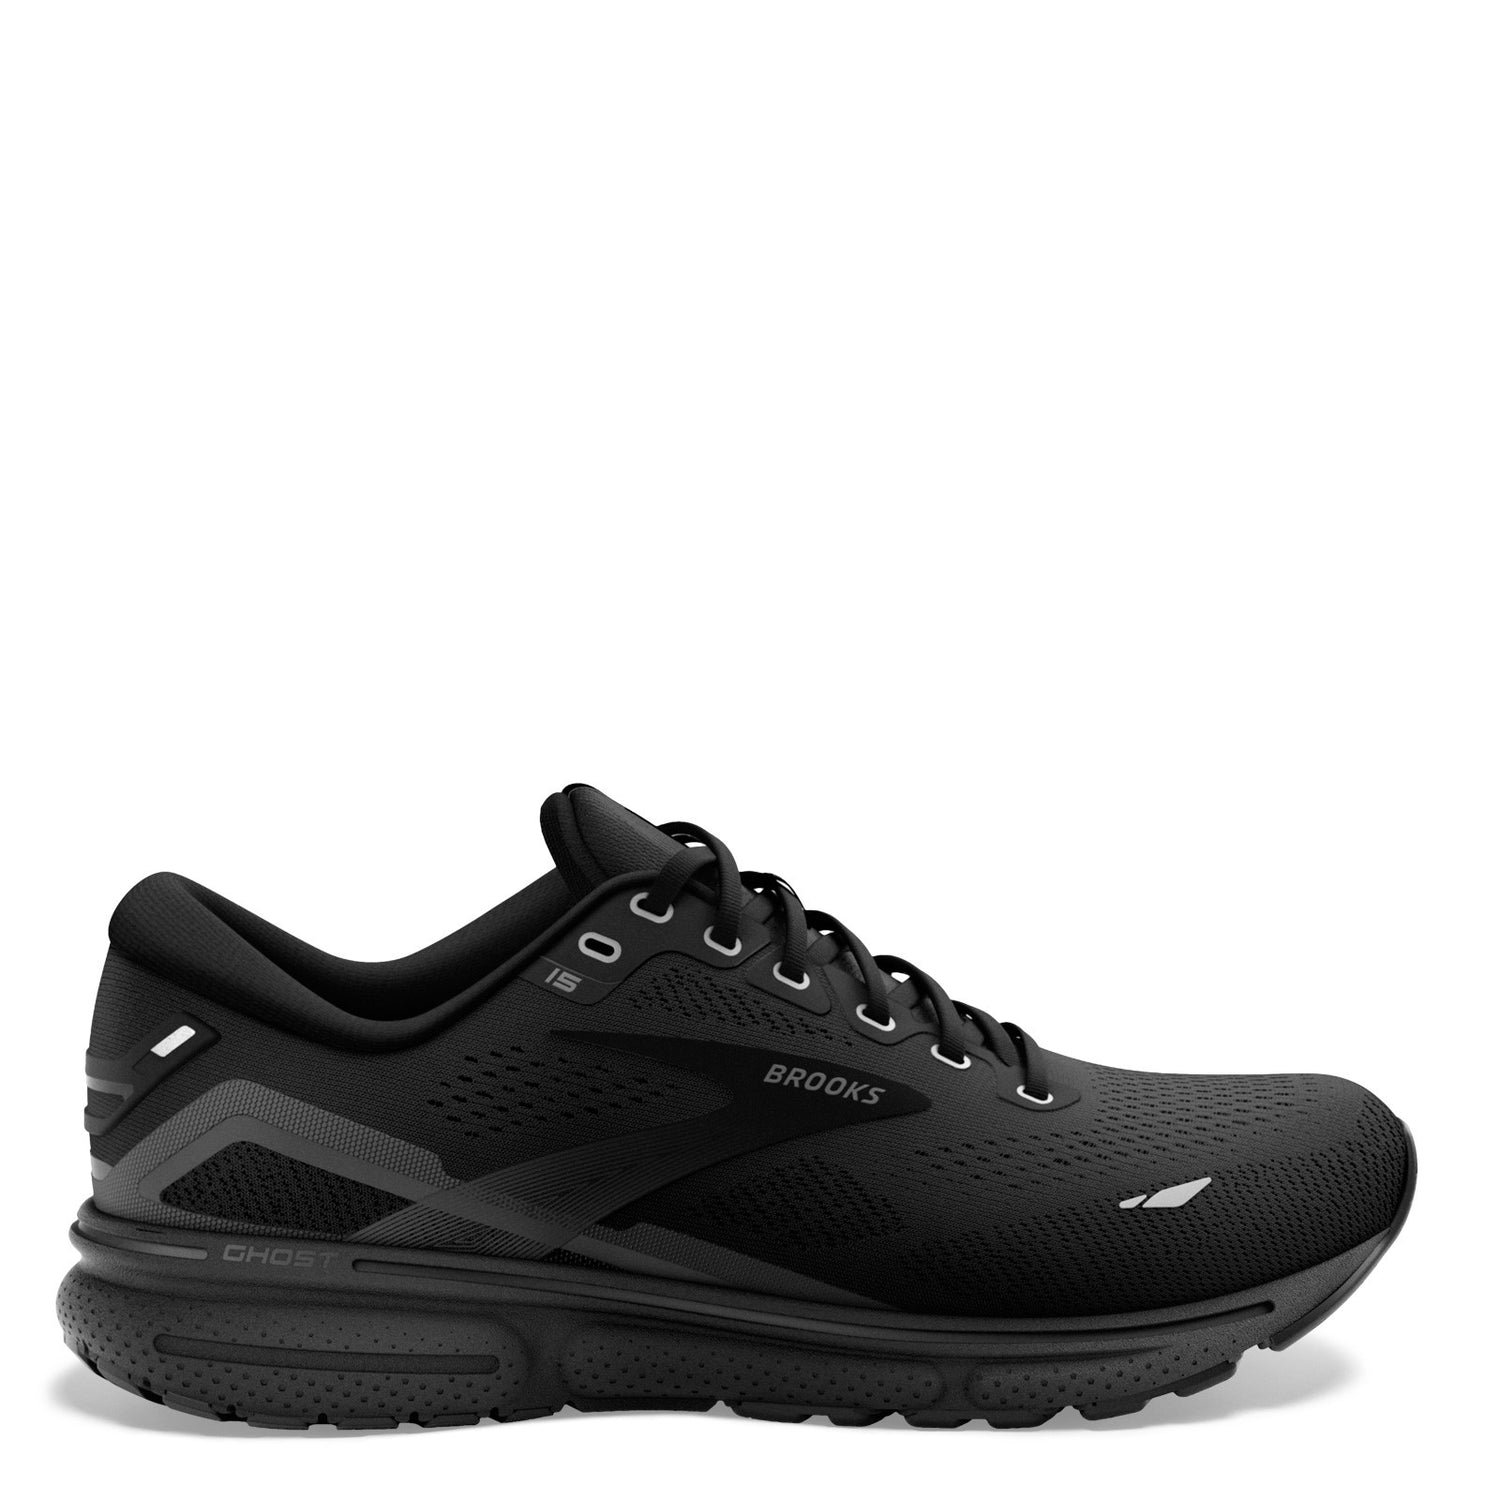 Peltz Shoes  Women's Brooks Ghost 15 Running Shoe - Wide Width Black/Black/Ebony 120380 1D 020